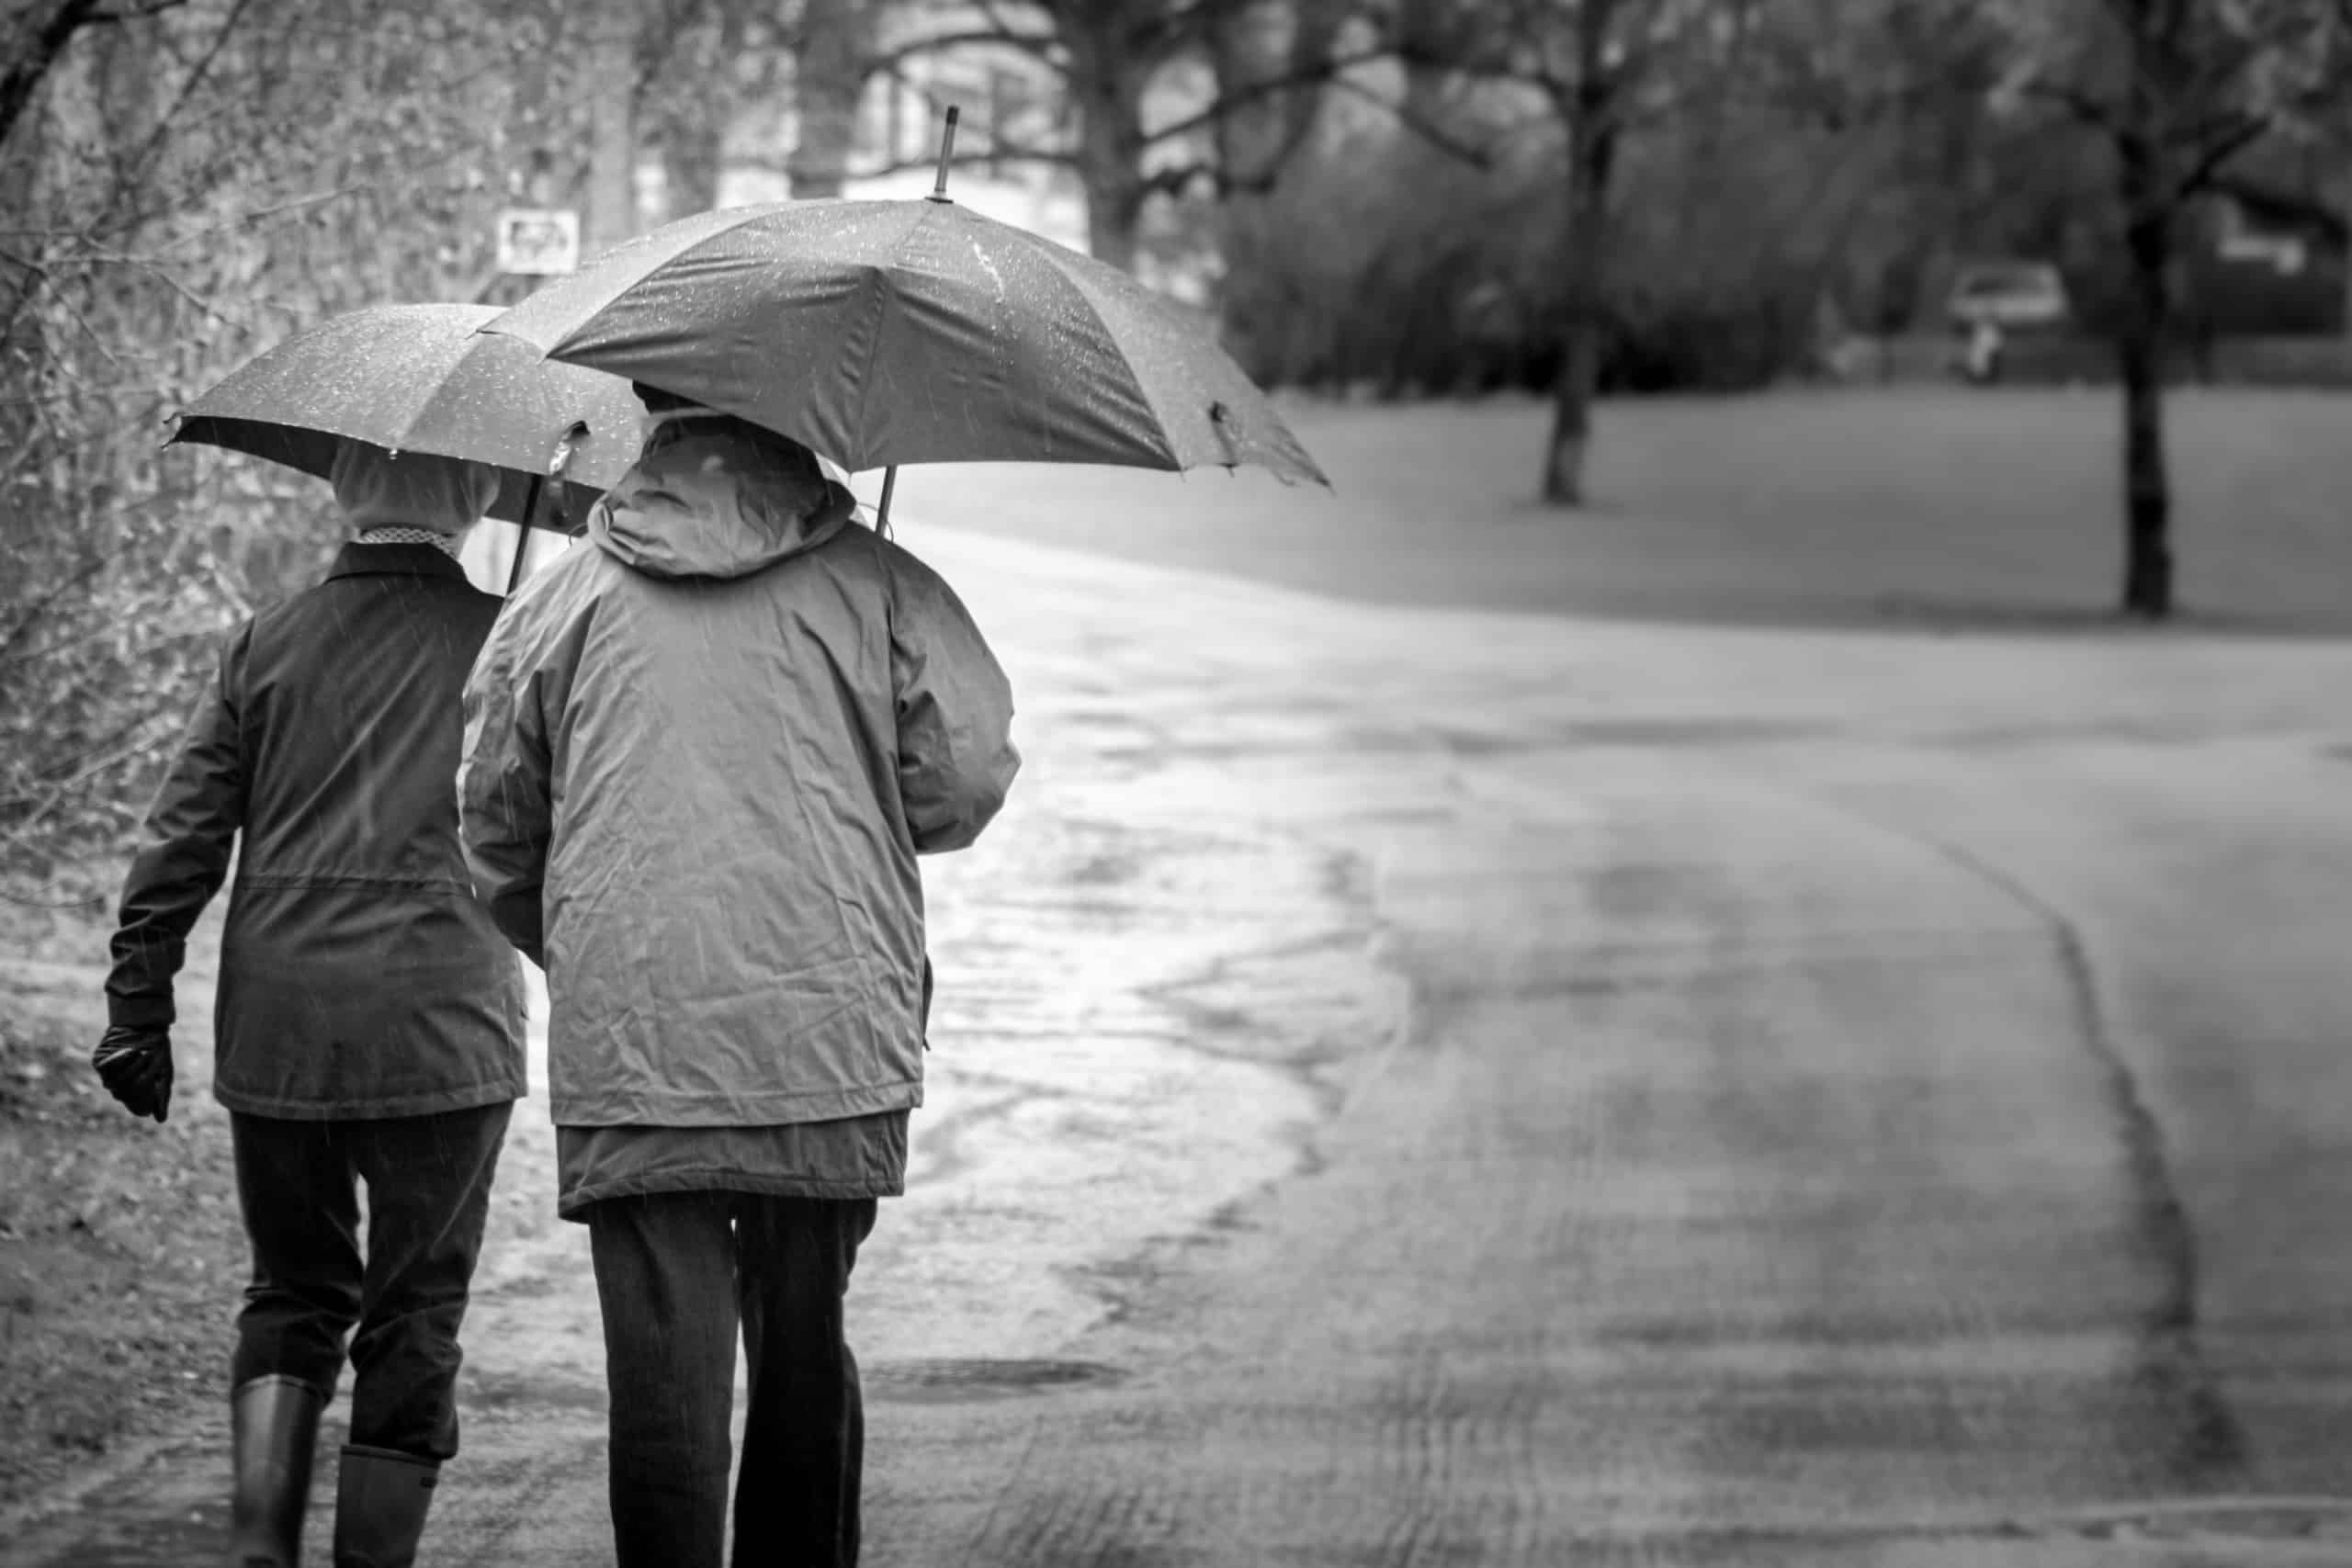 Couple walking in rain